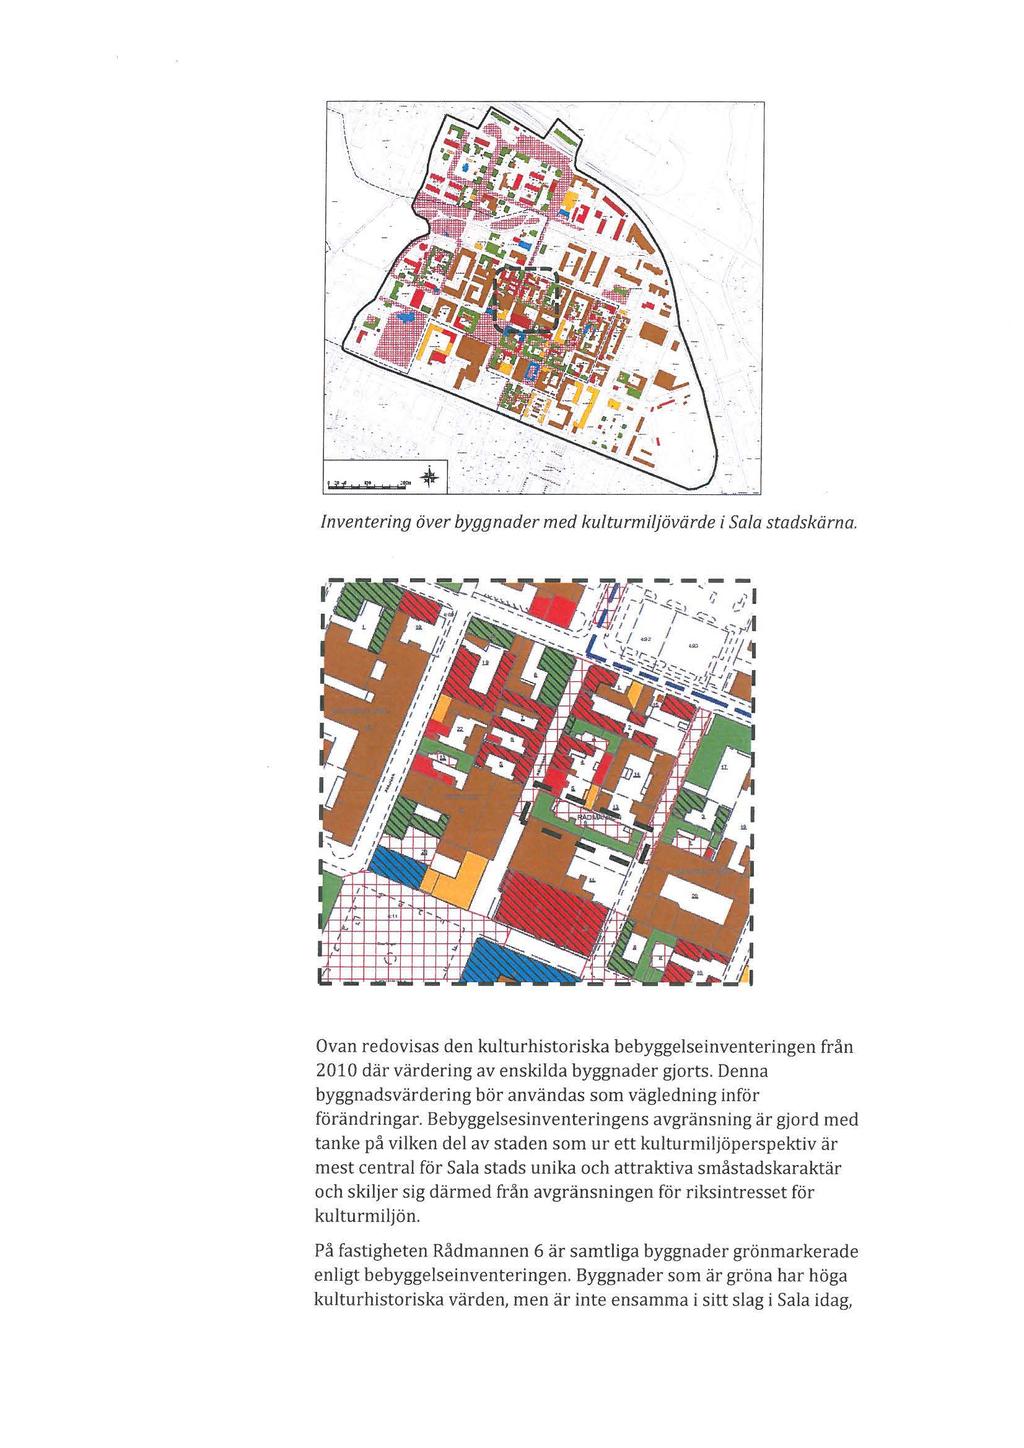 Inventering över byggnader med kuturmijövärde i Sa/a stadskärna. Ovan redovisas den kuturhistoriska bebyggeseinventeringen från 2010 där värdering av enskida byggnader gjorts.